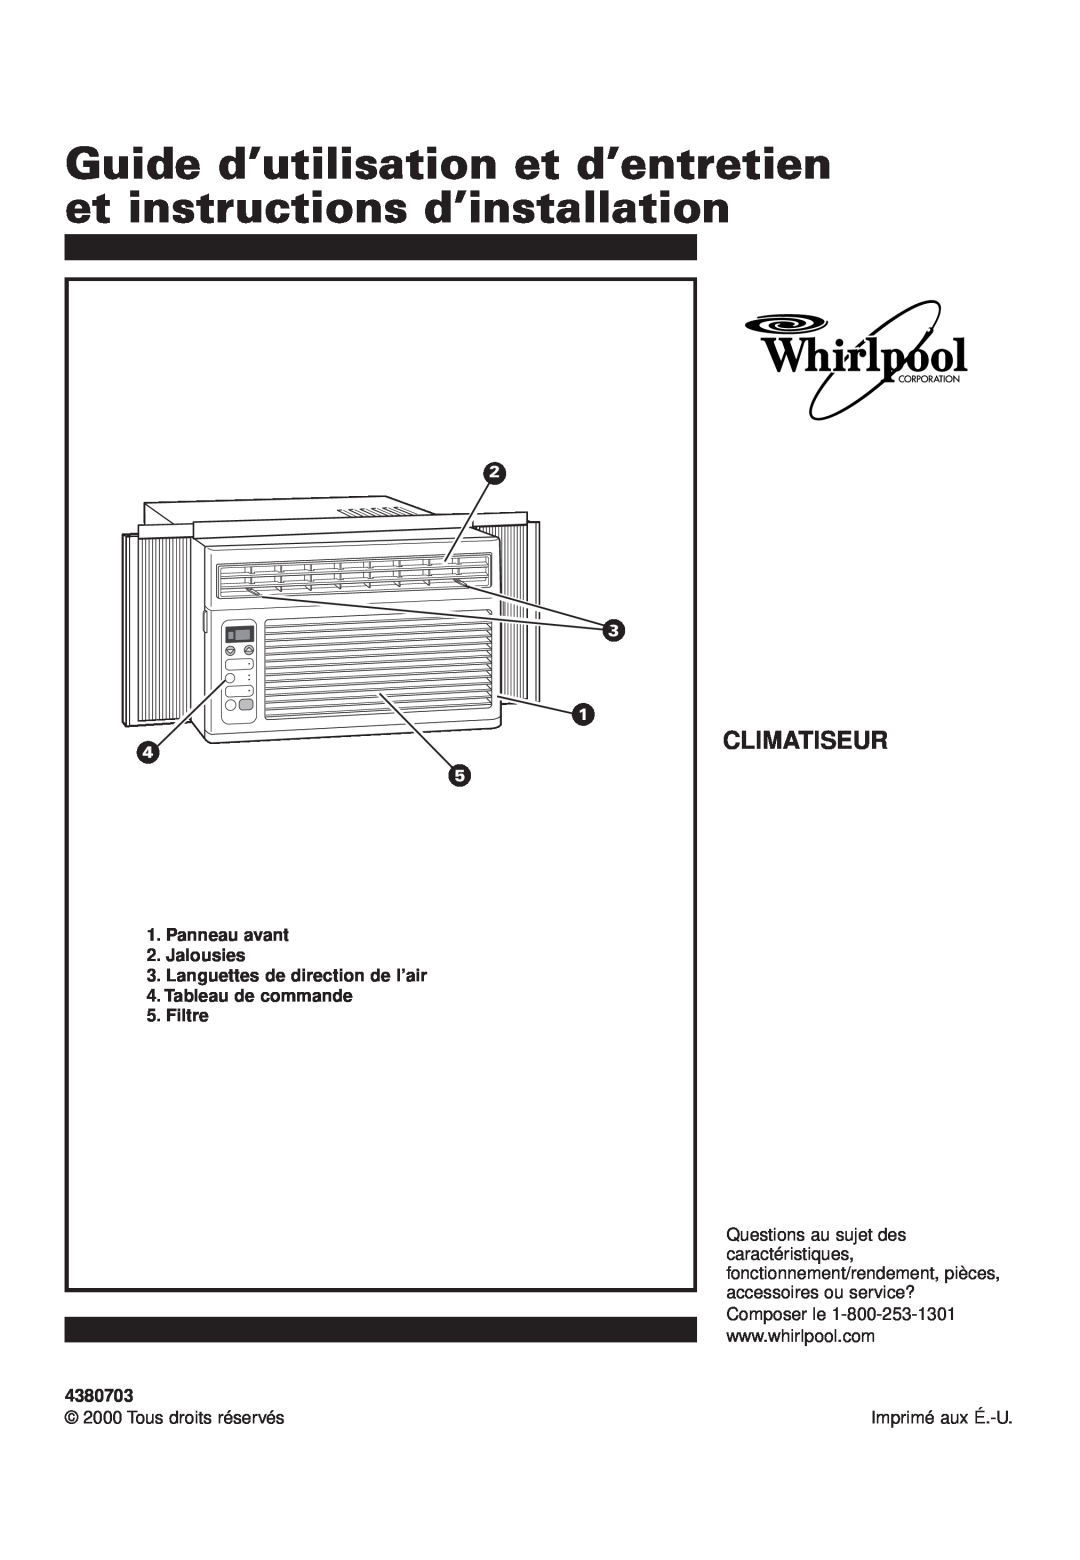 Whirlpool ACQ052PK0 Guide d’utilisation et d’entretien et instructions d’installation, Climatiseur, Panneau avant, Filtre 